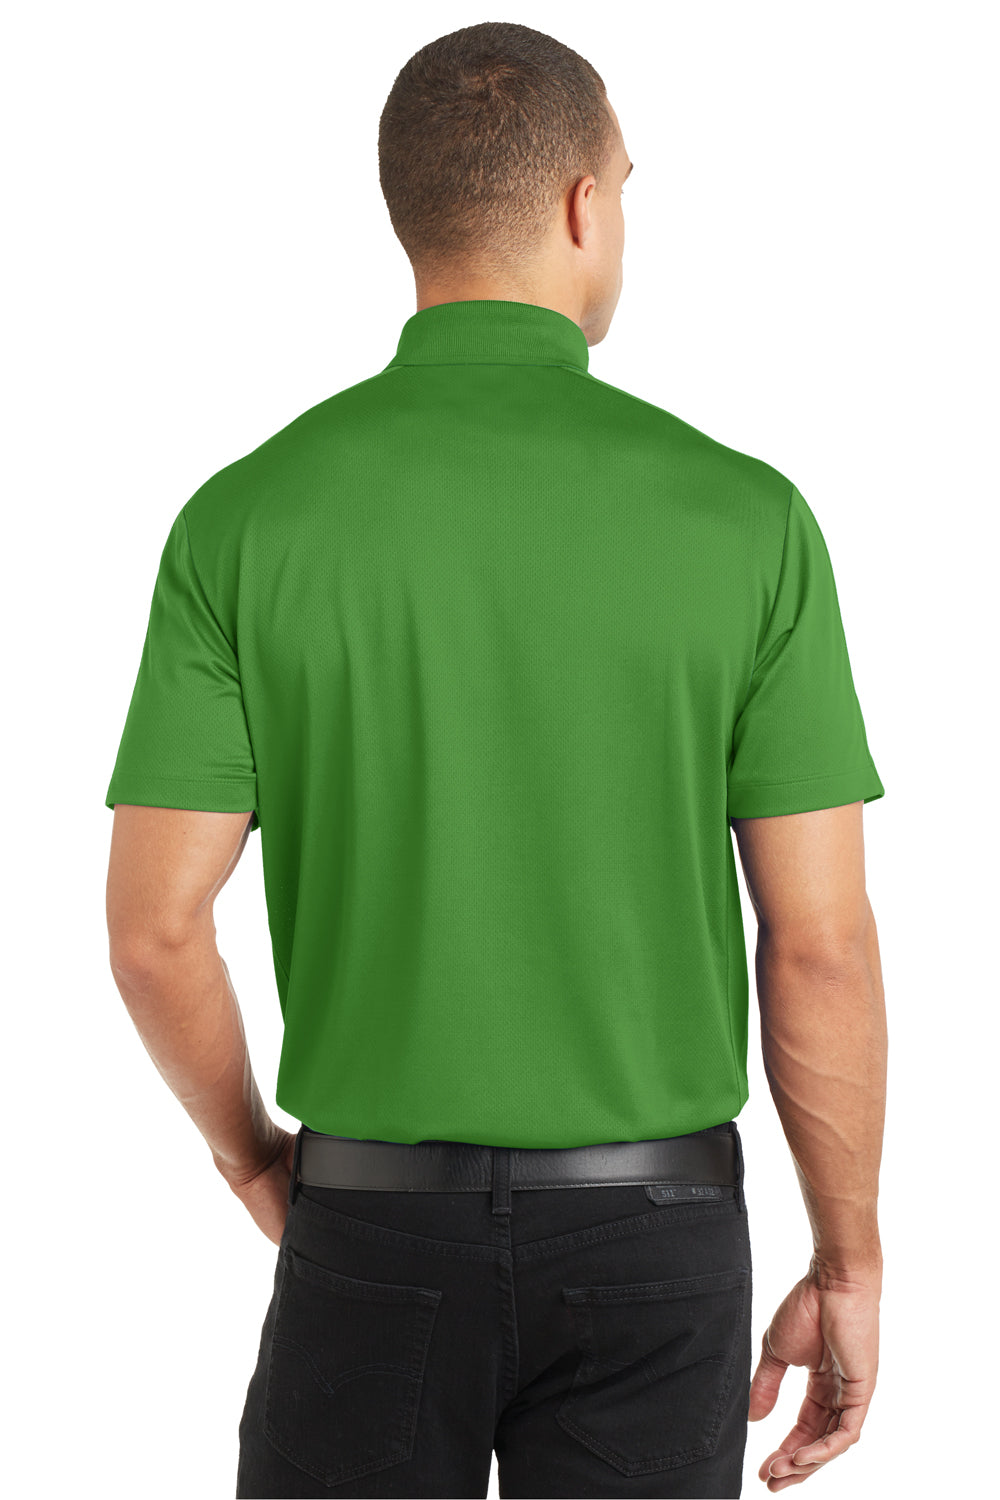 Port Authority K569 Mens Moisture Wicking Short Sleeve Polo Shirt Vine Green Back